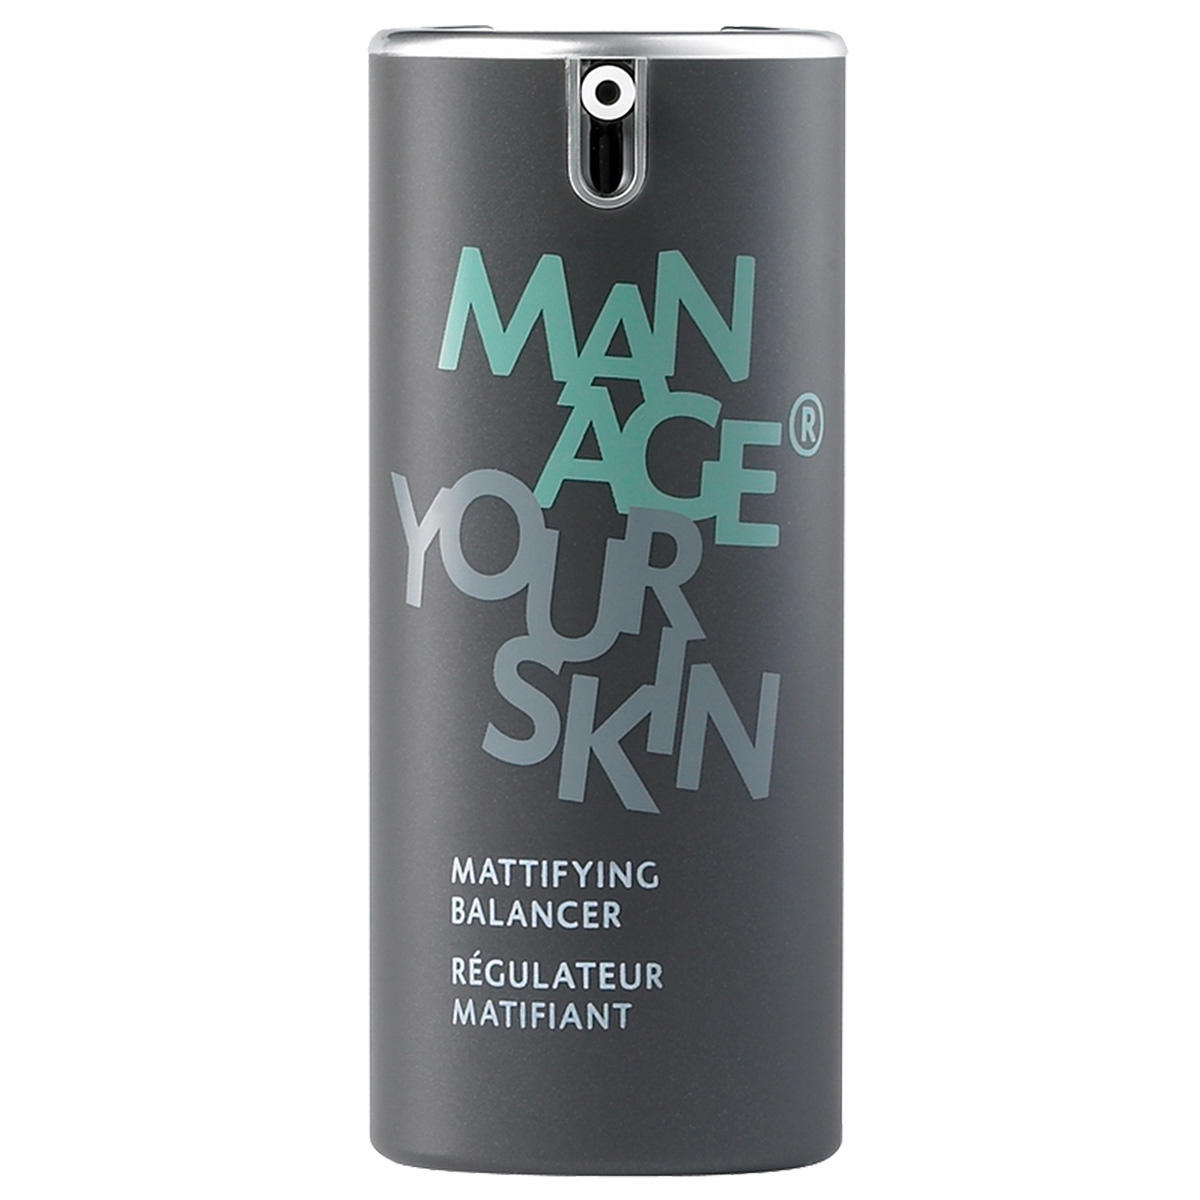 Manage Your Skin MATTIFYING BALANCER 50 ml - 1